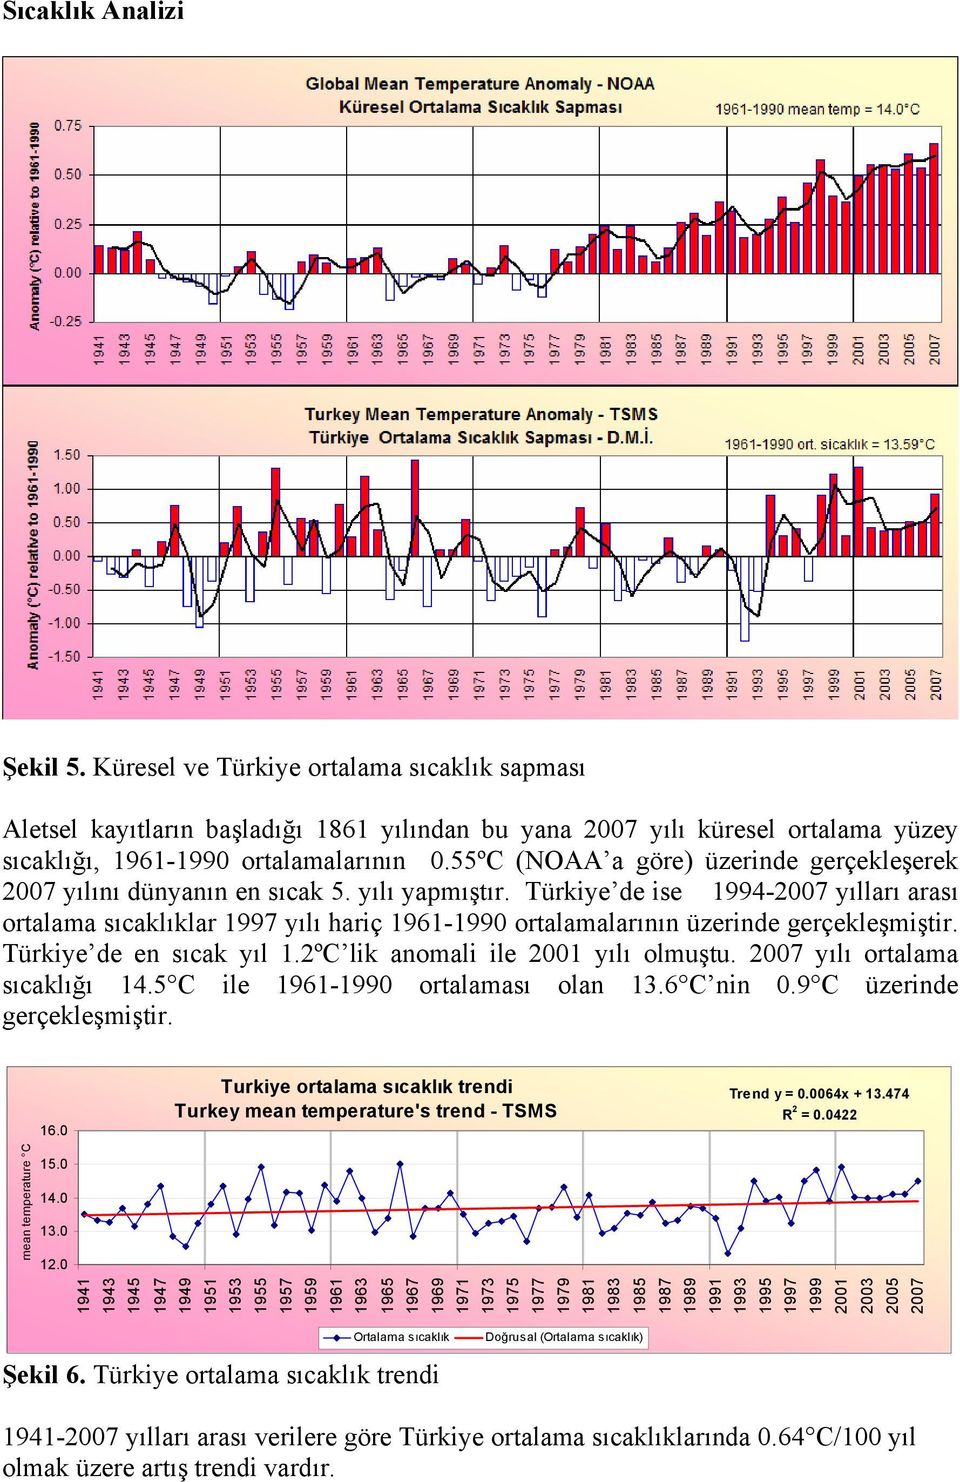 Türkiye de ise 1994-2007 yılları arası ortalama sıcaklıklar 1997 yılı hariç 1961-1990 ortalamalarının üzerinde gerçekleşmiştir. Türkiye de en sıcak yıl 1.2ºC lik anomali ile 2001 yılı olmuştu.